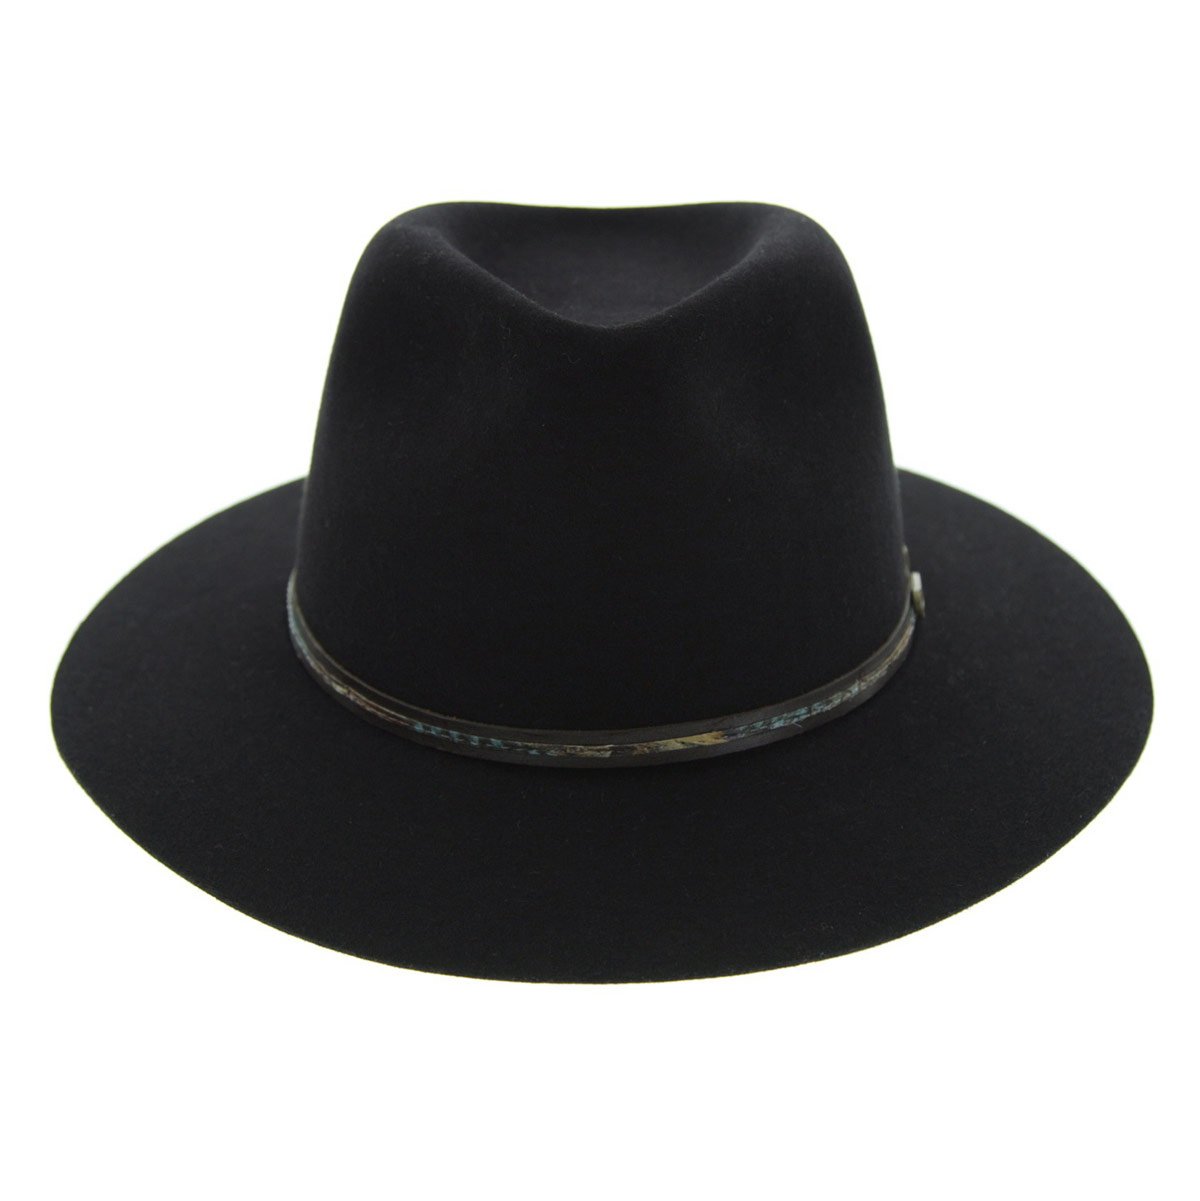 Akubra Leisure Time Hat - Black